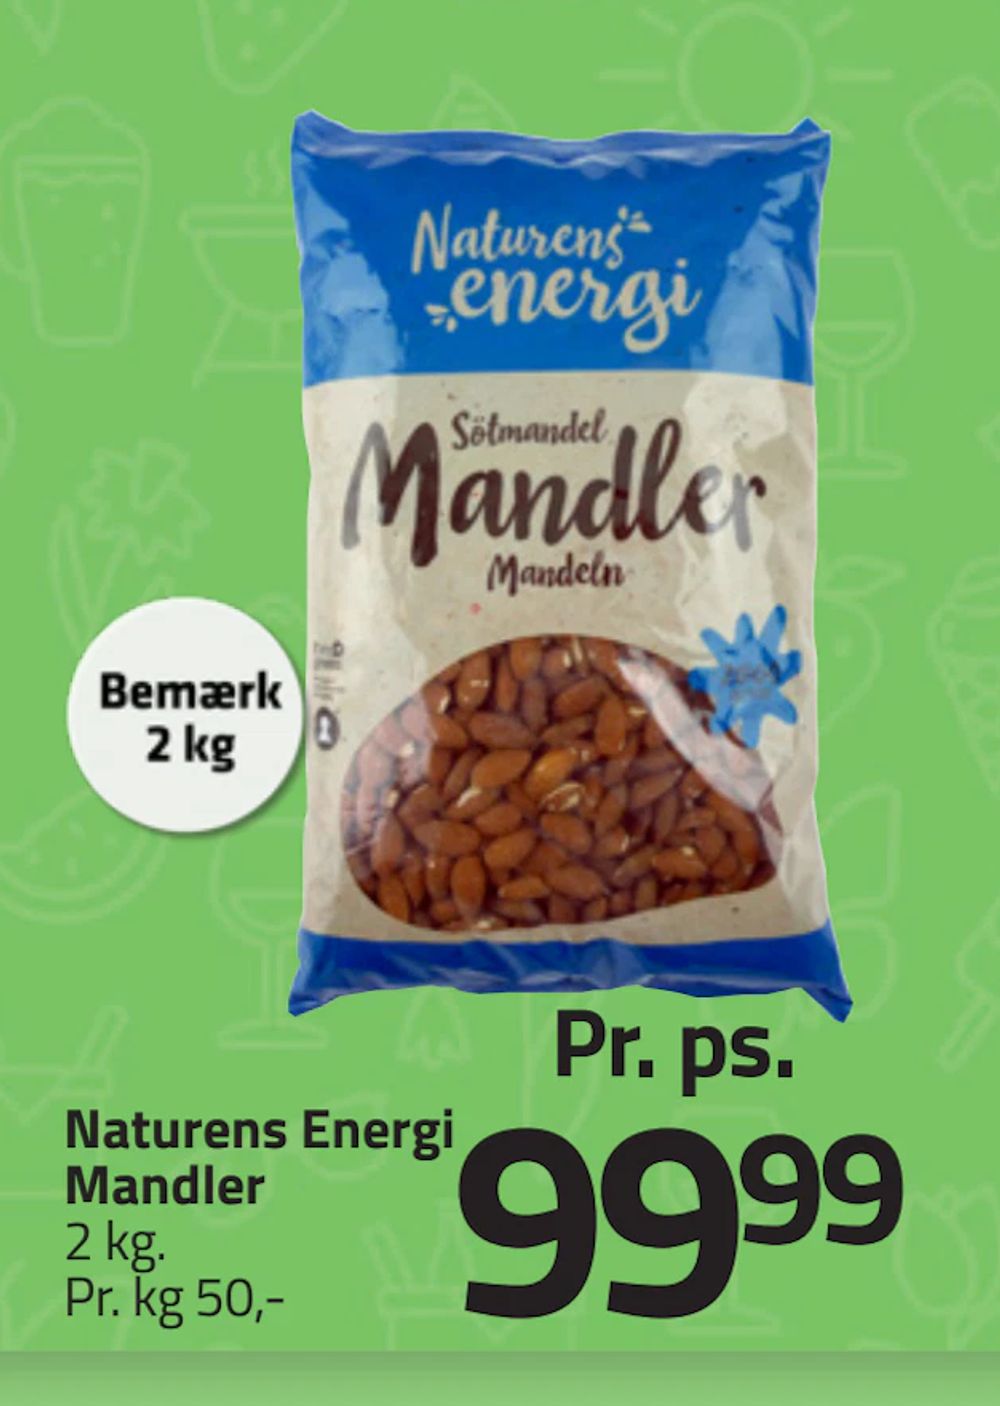 Tilbud på Naturens Energi Mandler fra Fleggaard til 99,99 kr.